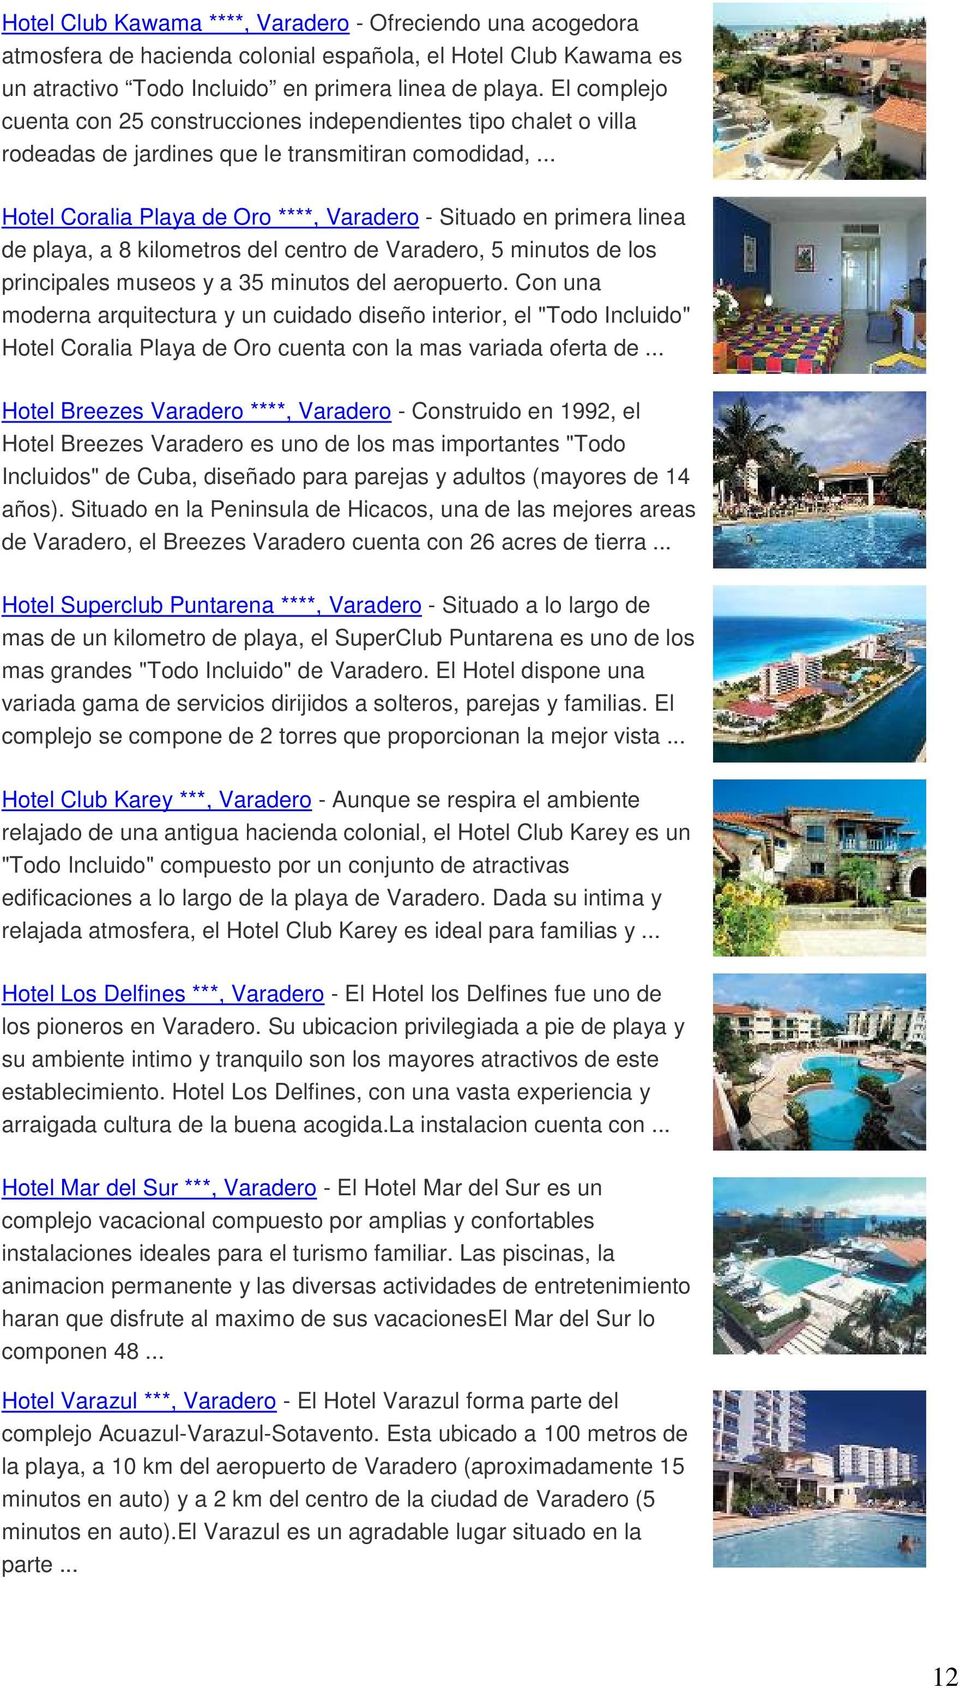 .. Hotel Coralia Playa de Oro ****, Varadero - Situado en primera linea de playa, a 8 kilometros del centro de Varadero, 5 minutos de los principales museos y a 35 minutos del aeropuerto.